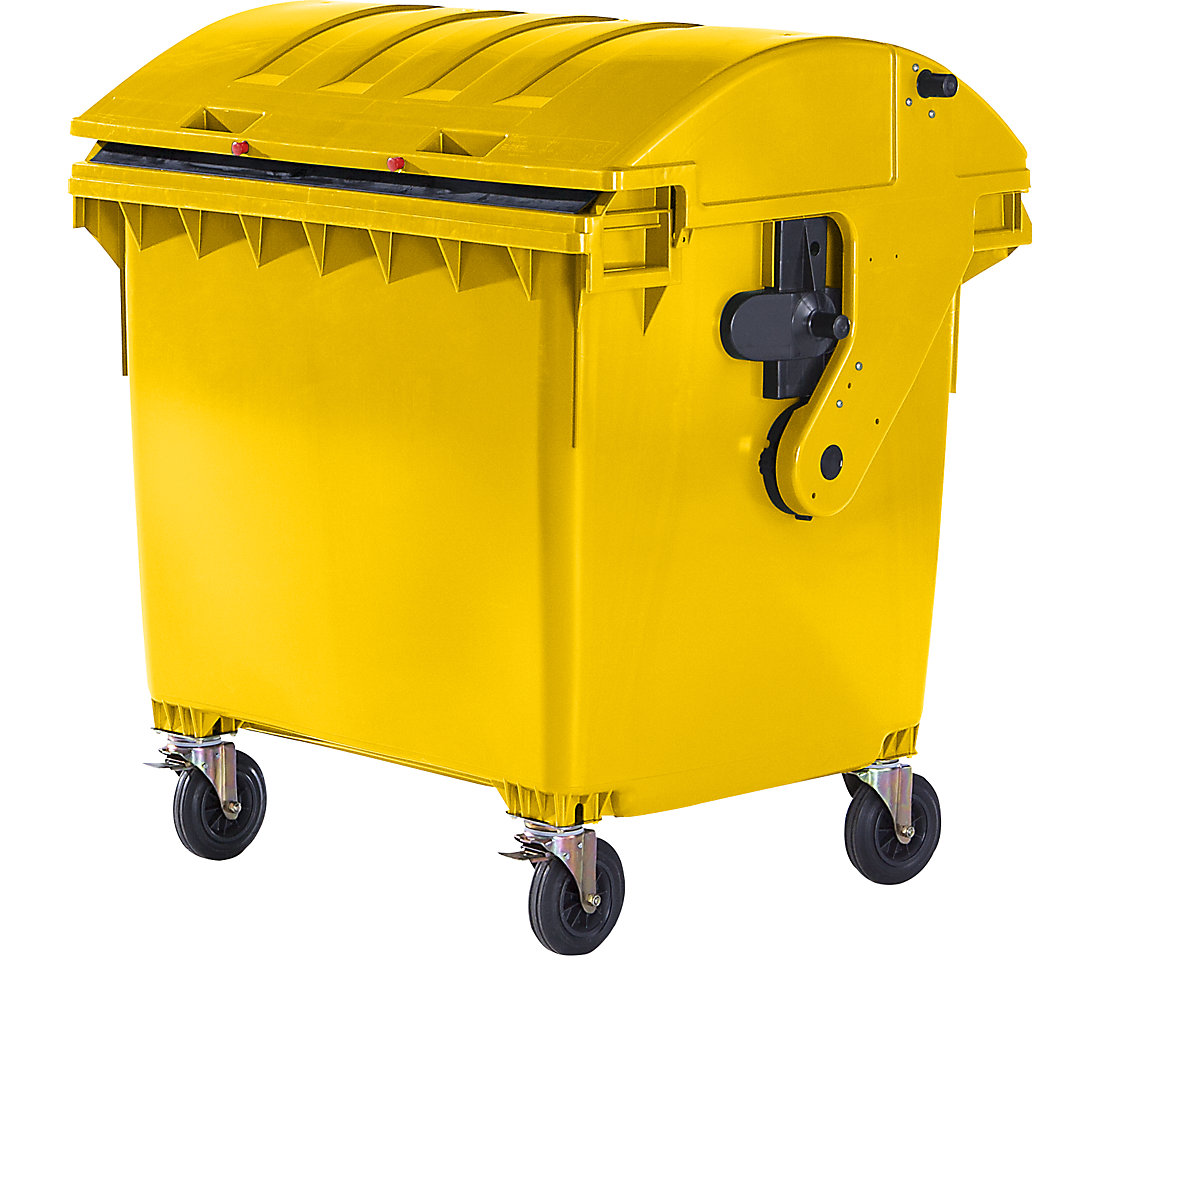 Contentor do lixo em plástico, DIN EN 840, volume 1100 l, LxAxP 1360 x 1465 x 1100 mm, tampa deslizante, proteção para crianças, amarelo, a partir de 5 unid.-6